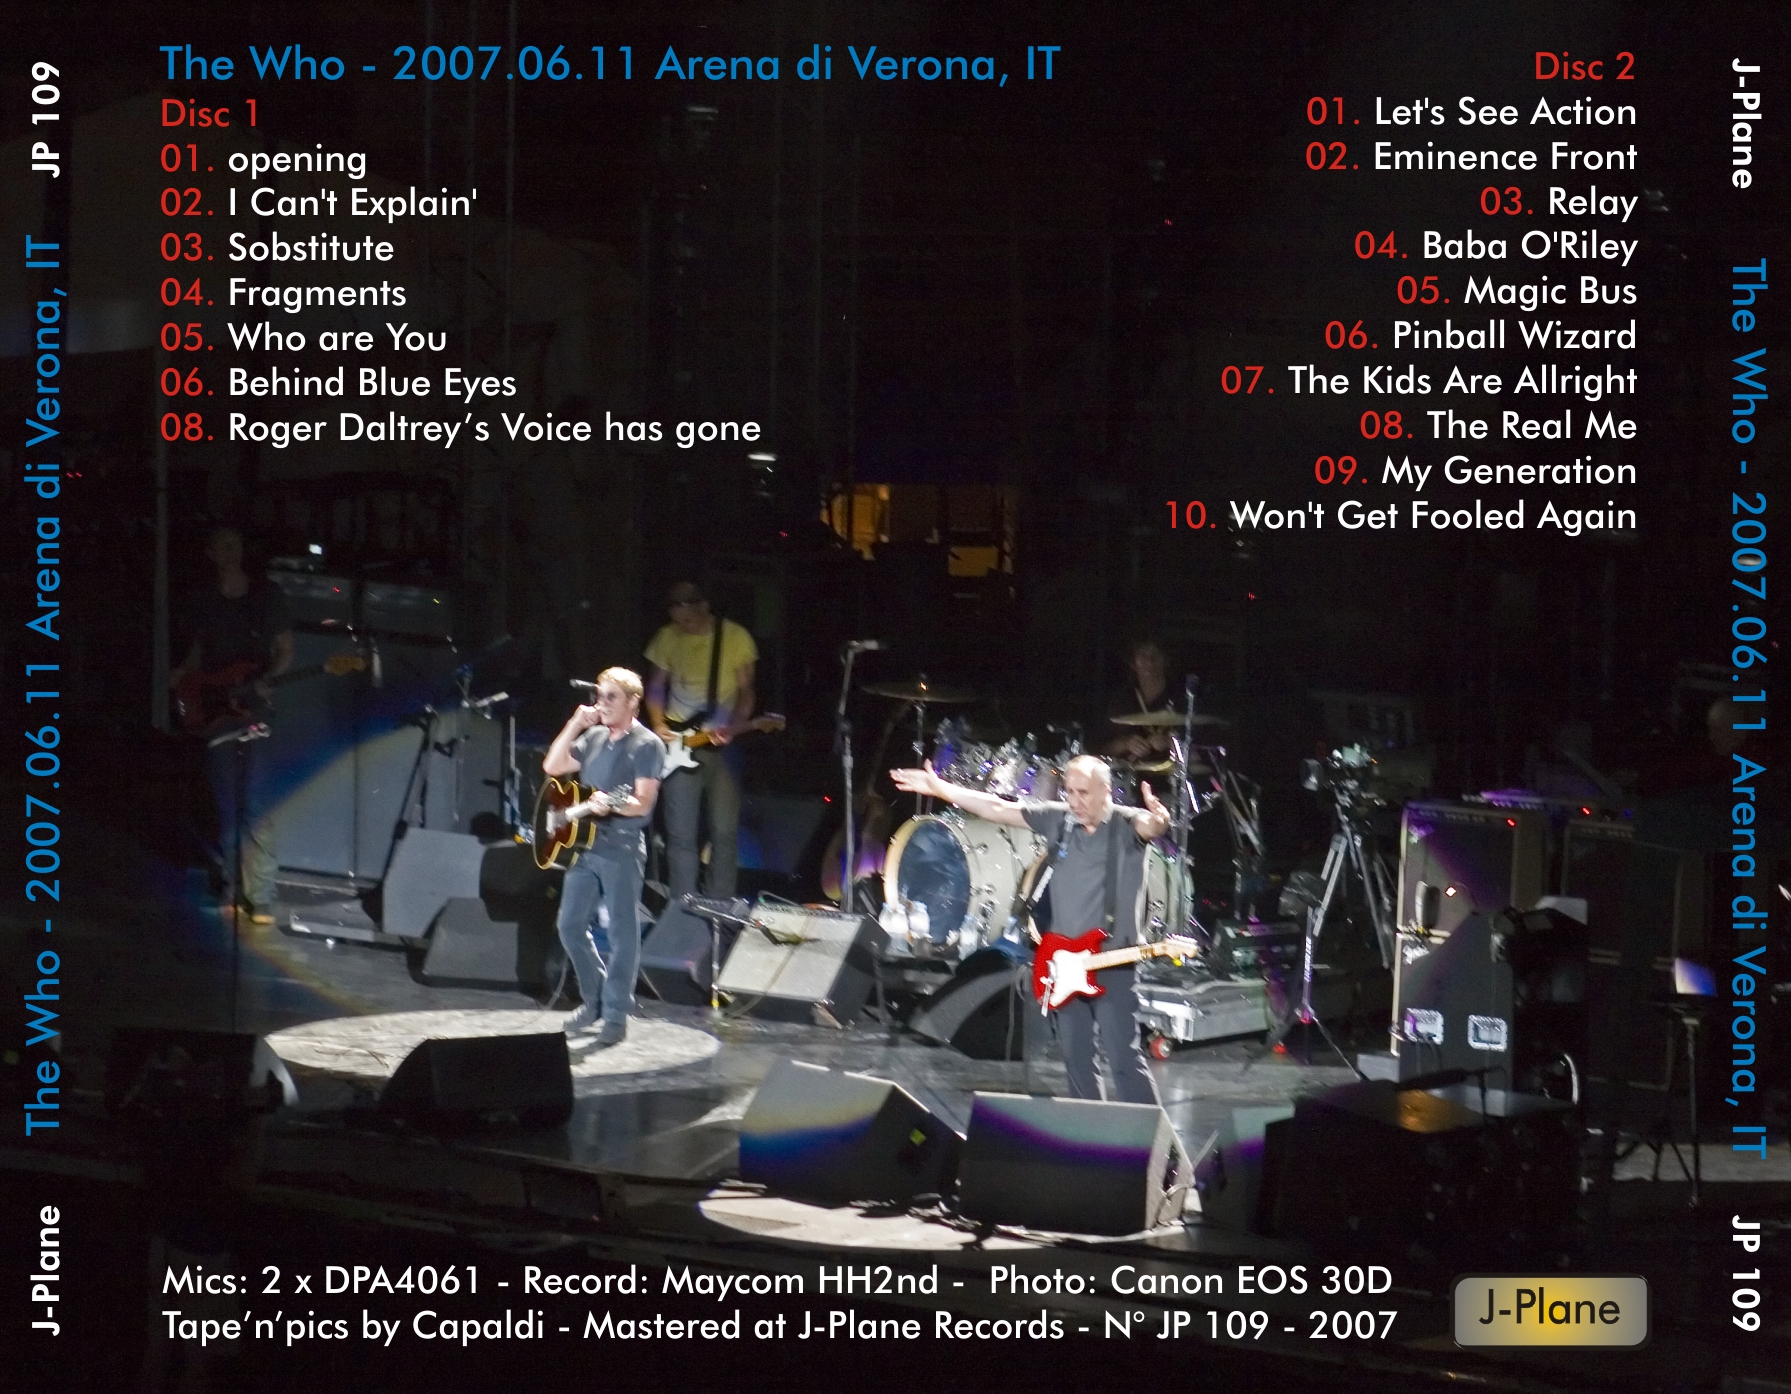 Who2007-06-11ArenaDiVeronaItaly (1).jpg